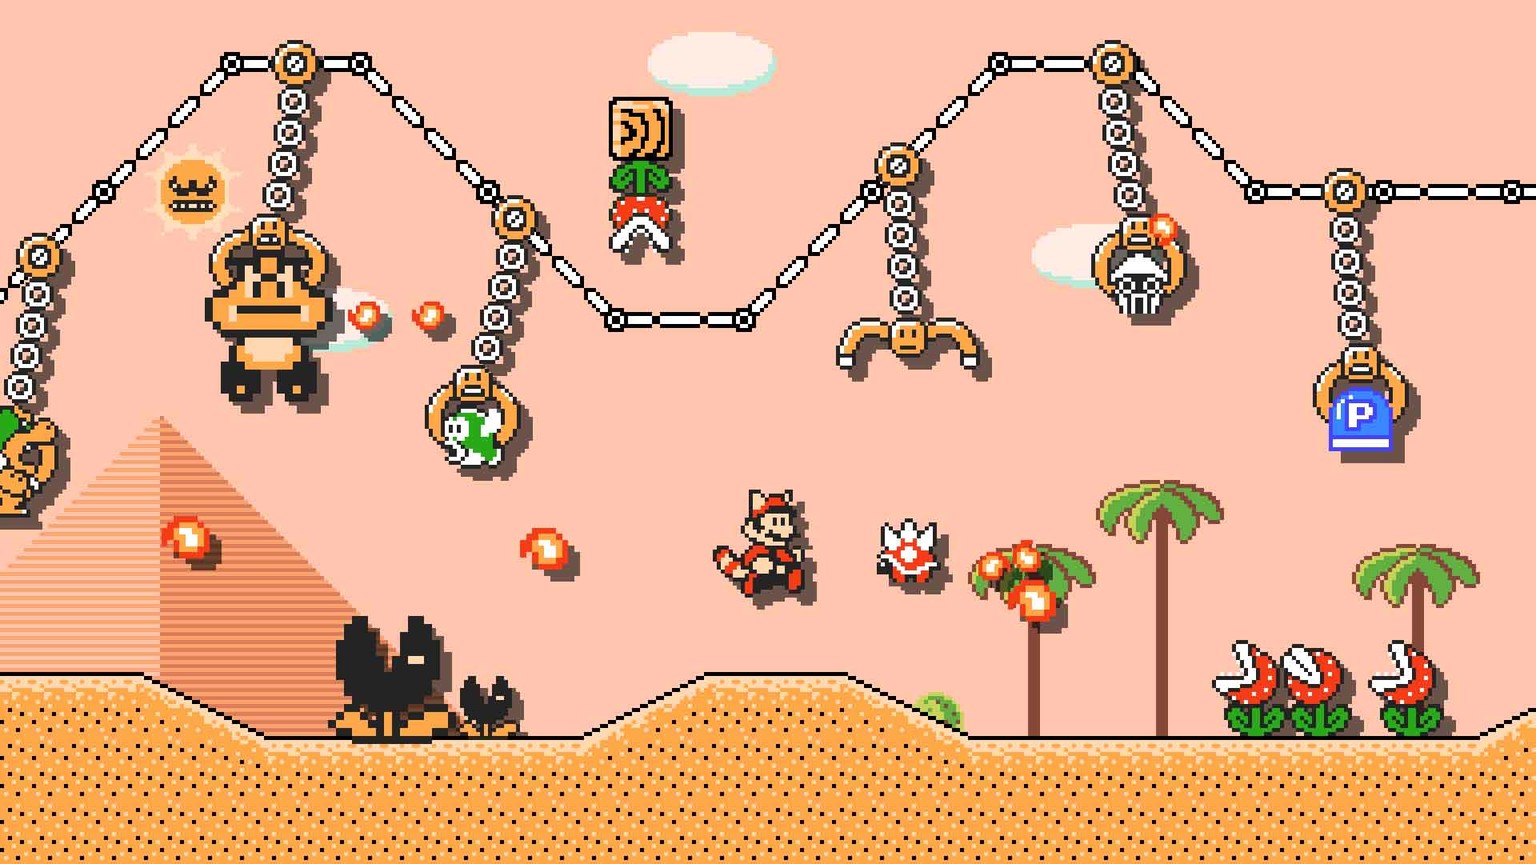 Ein kleines Beispiel, was man alles mit «Super Mario Maker 2» anstellen und in den Levels platzieren kann.